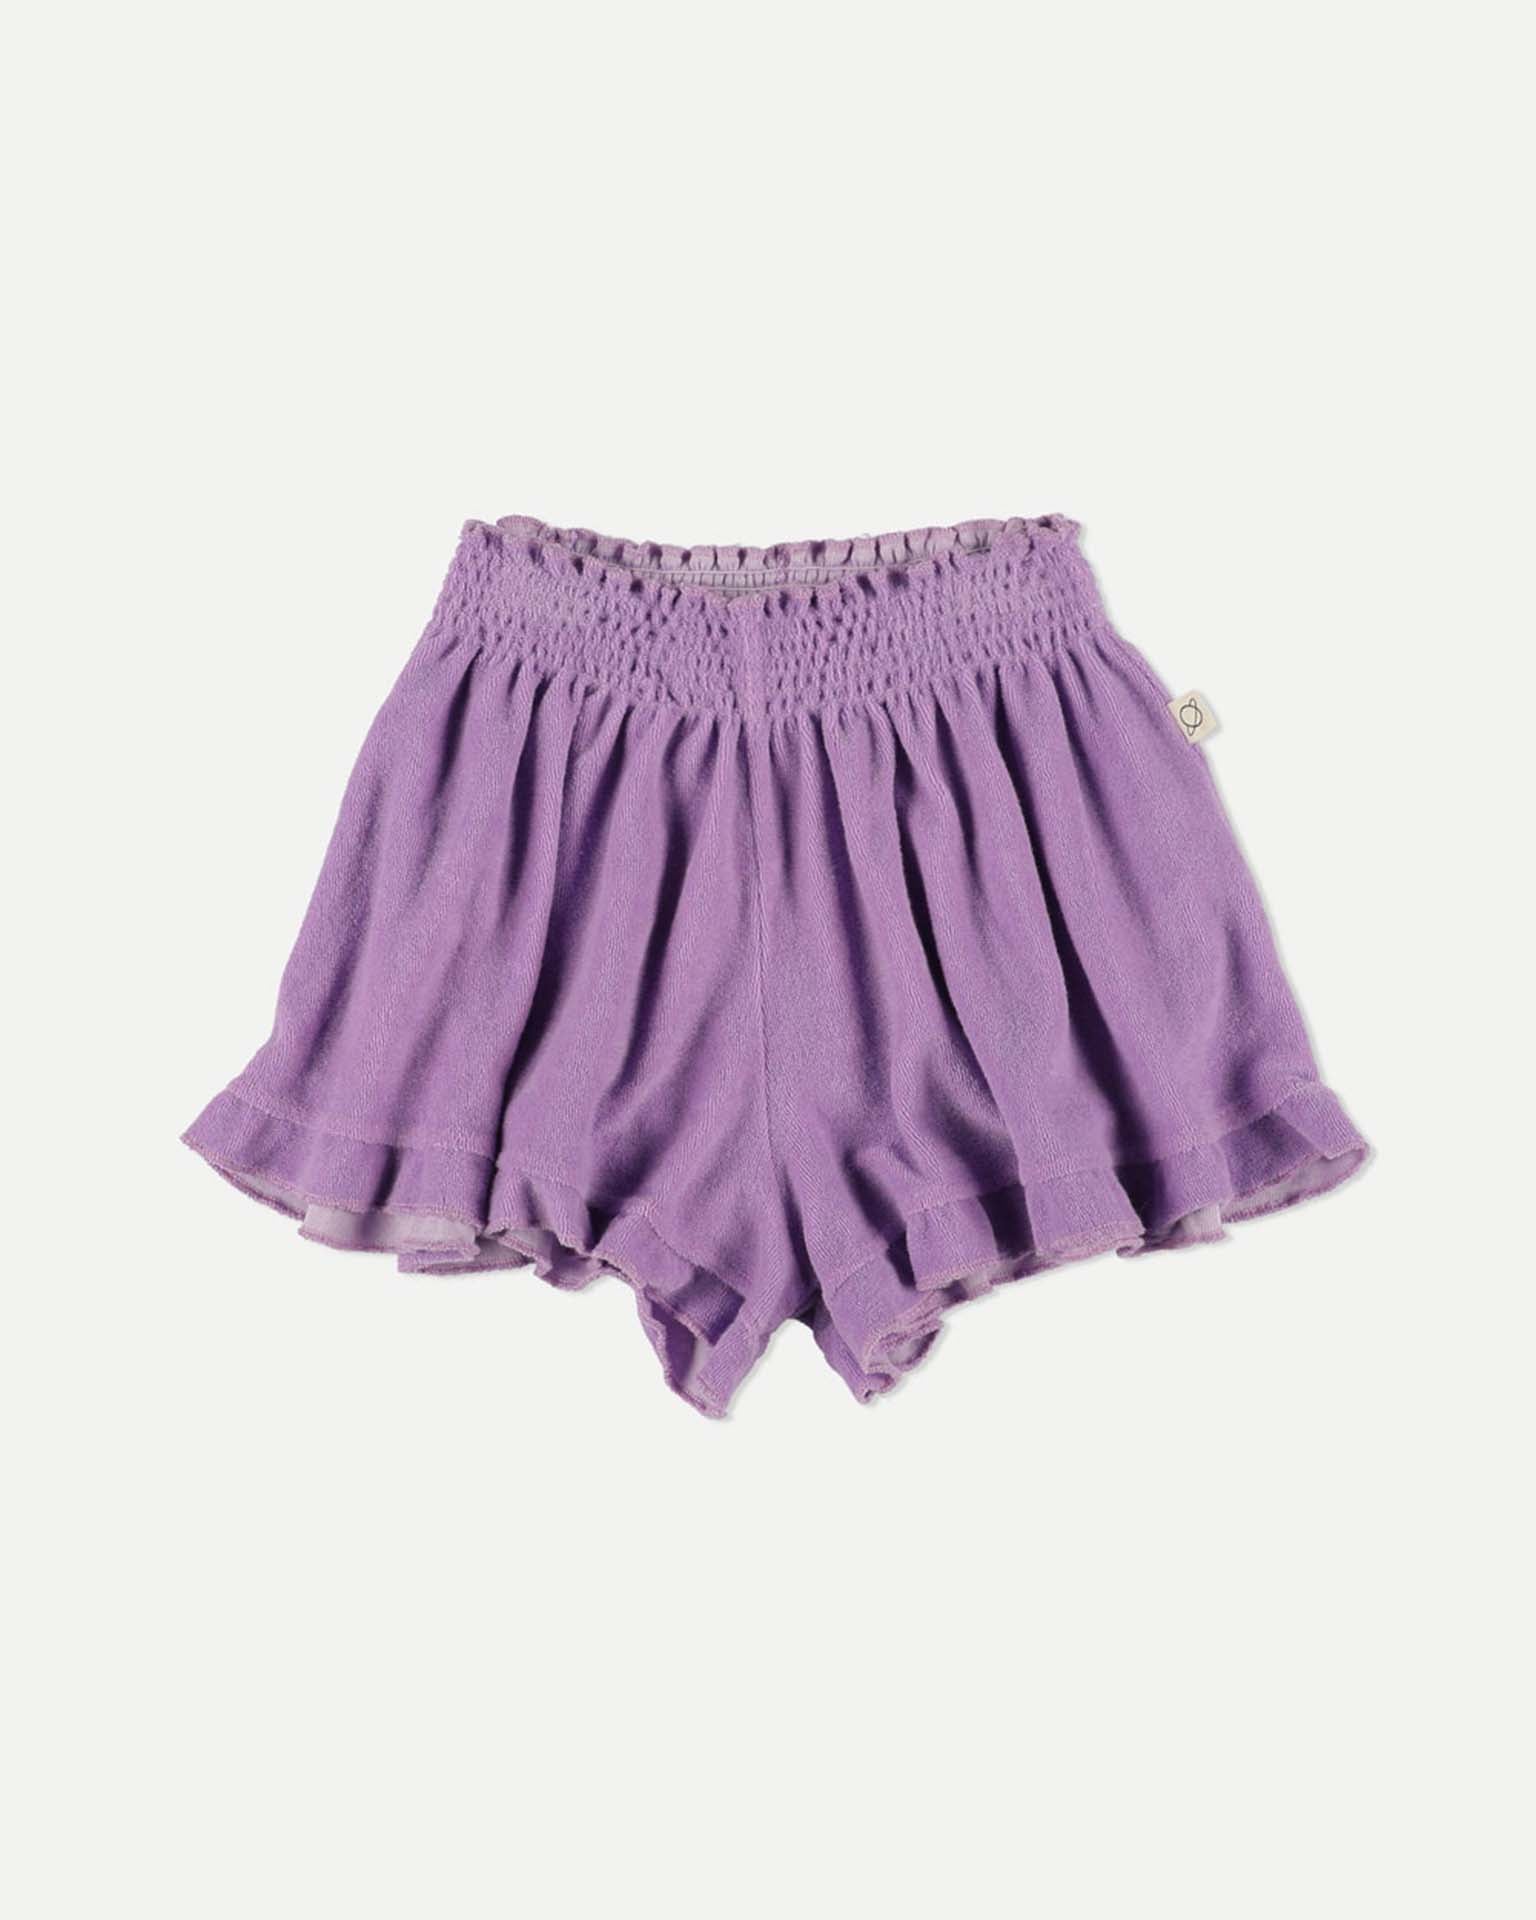 Little my little cozmo kids louise ruffle shorts in purple